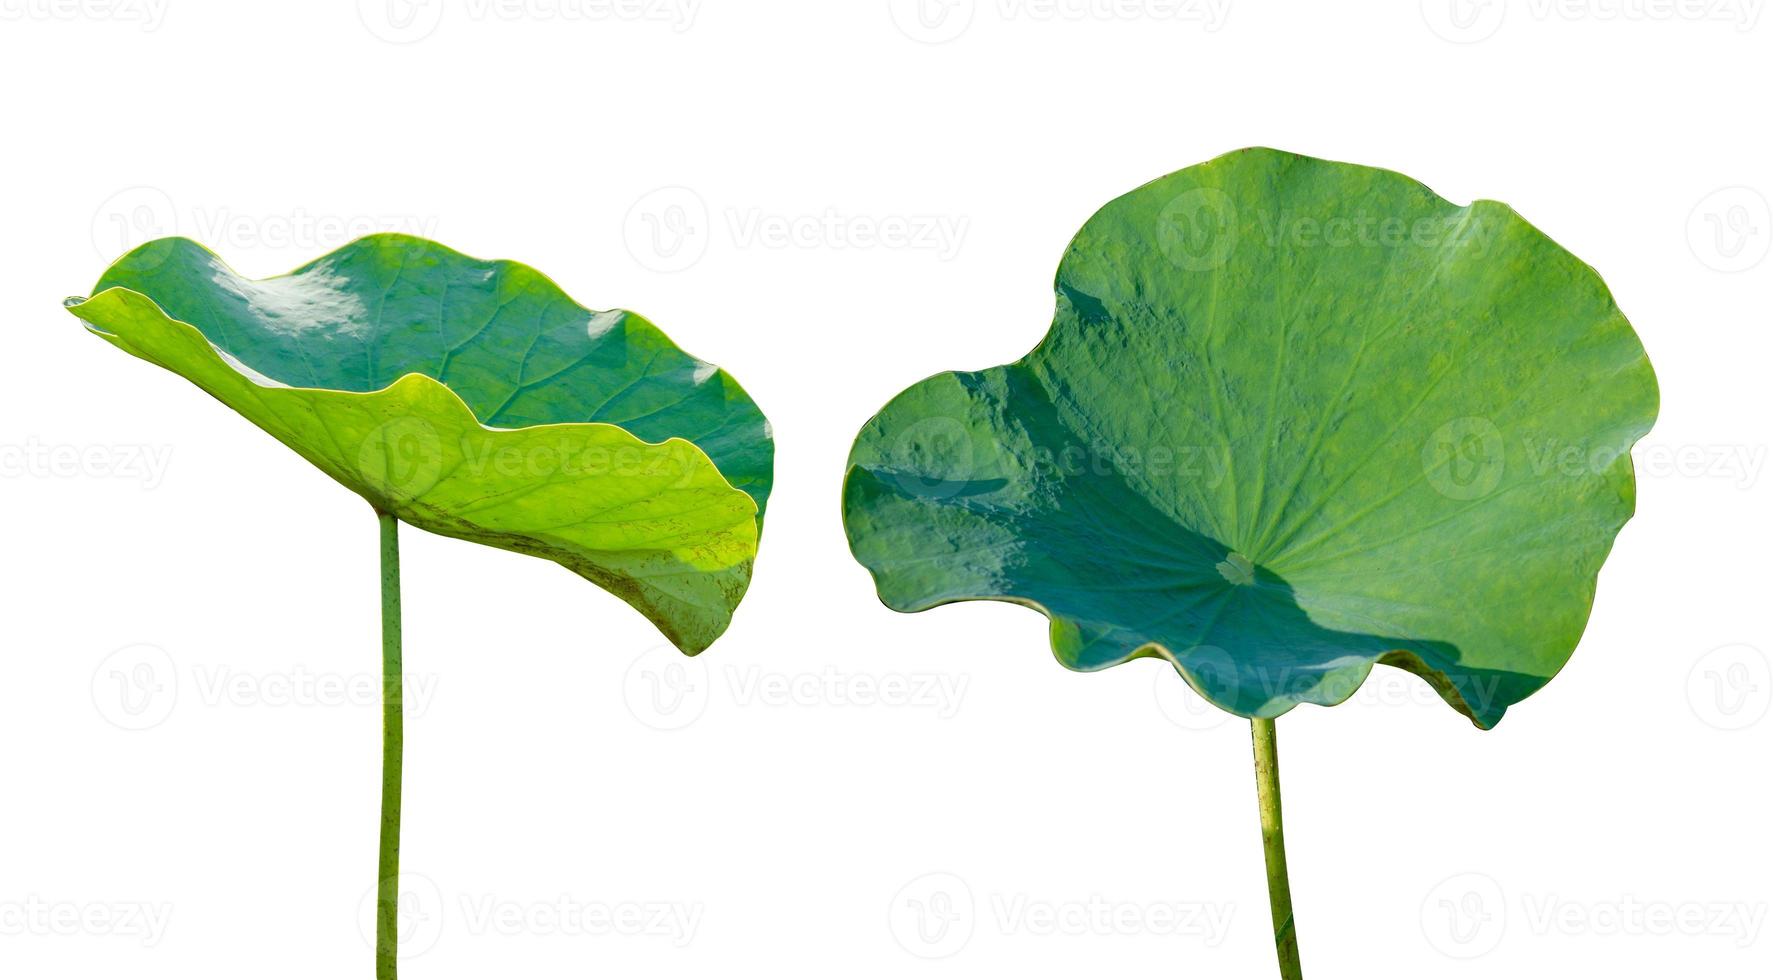 lotusblad isoleren 2 collectie van witte achtergrond foto